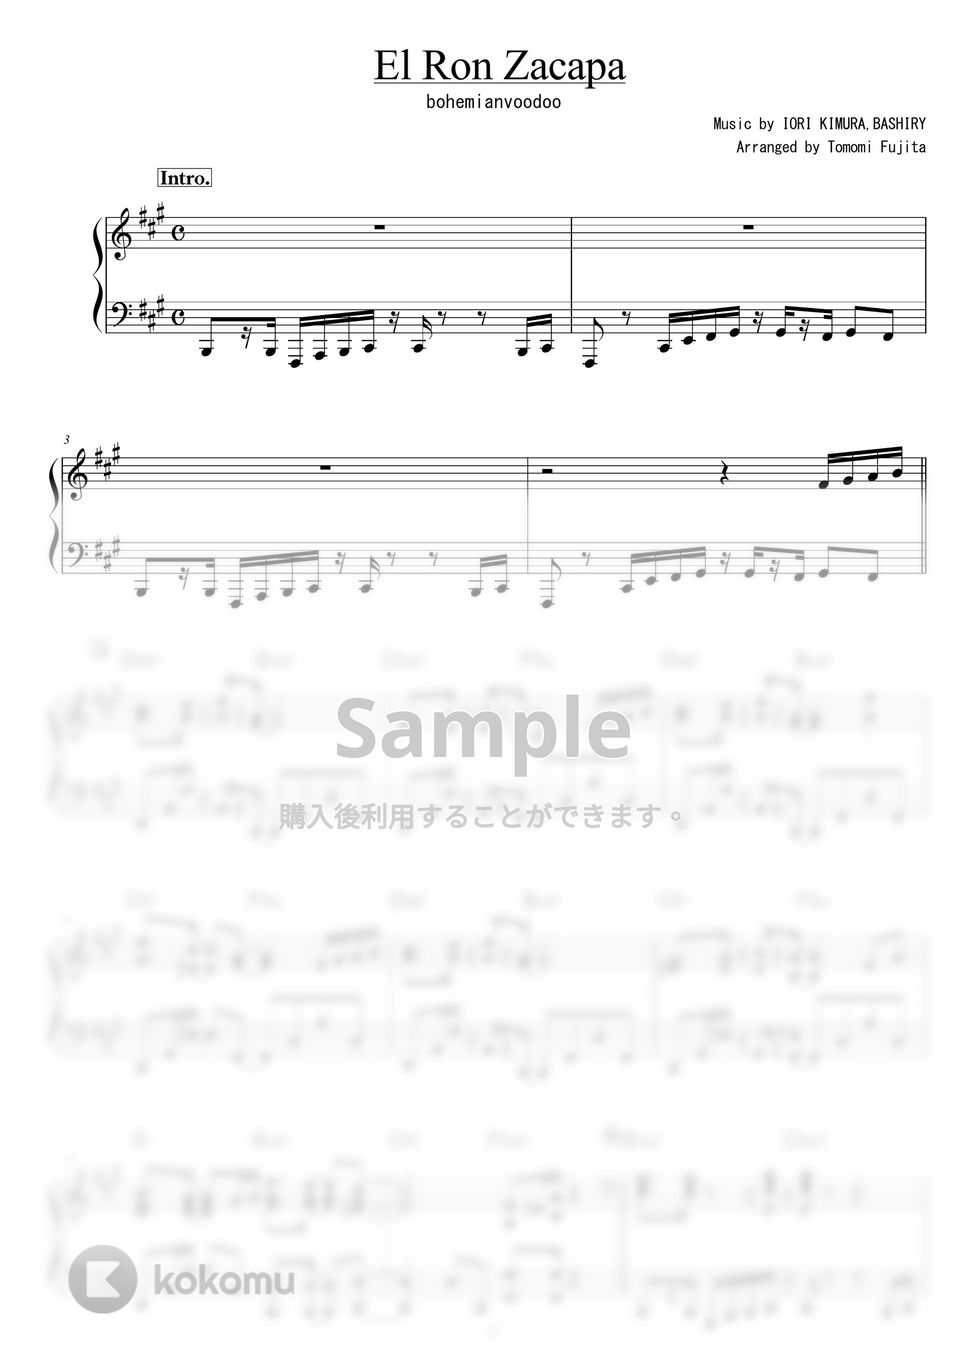 bohemianvoodoo - El Ron Zacapa by piano*score